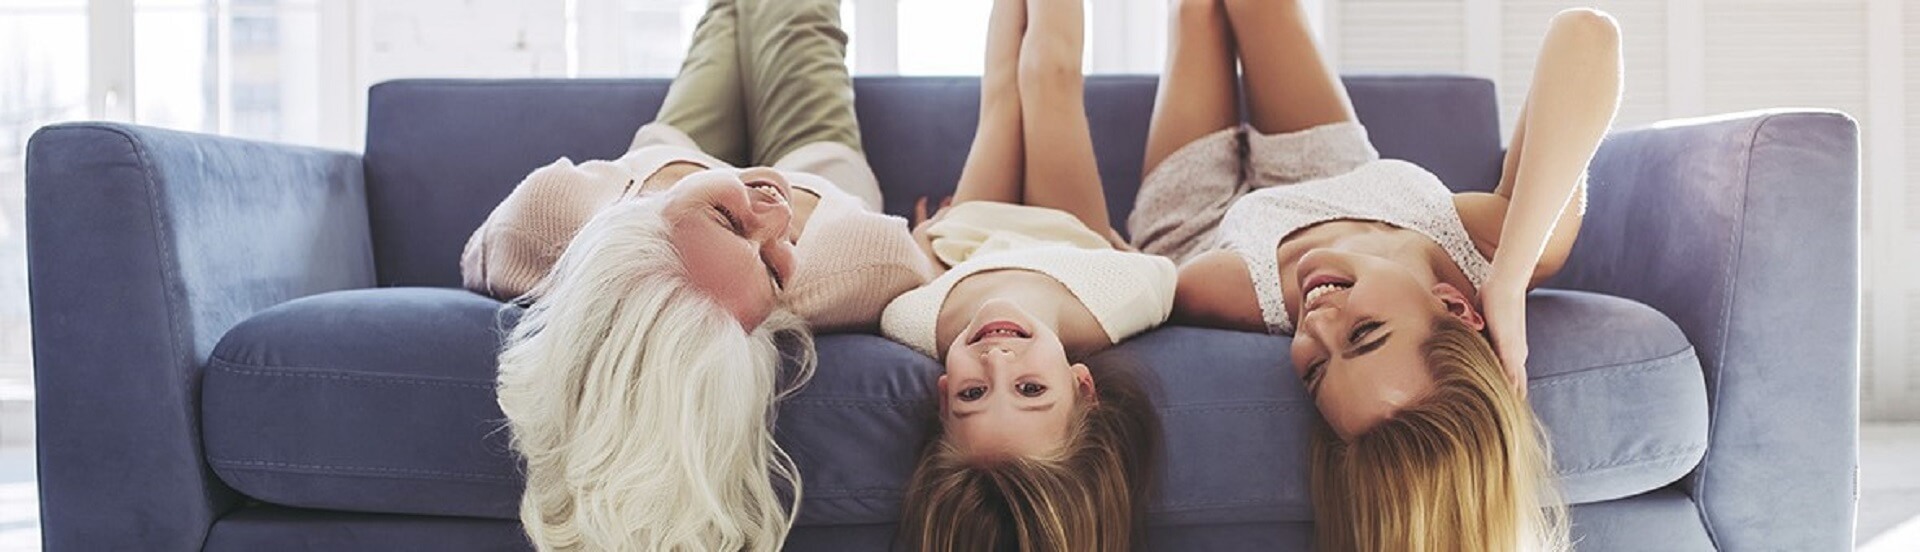 GUNST Headermotiv zum Blog-Artikel „Wohntrends 2022“; zwei Frauen und ein Mädchen liegen kopfüber lachend auf einem Sofa.
